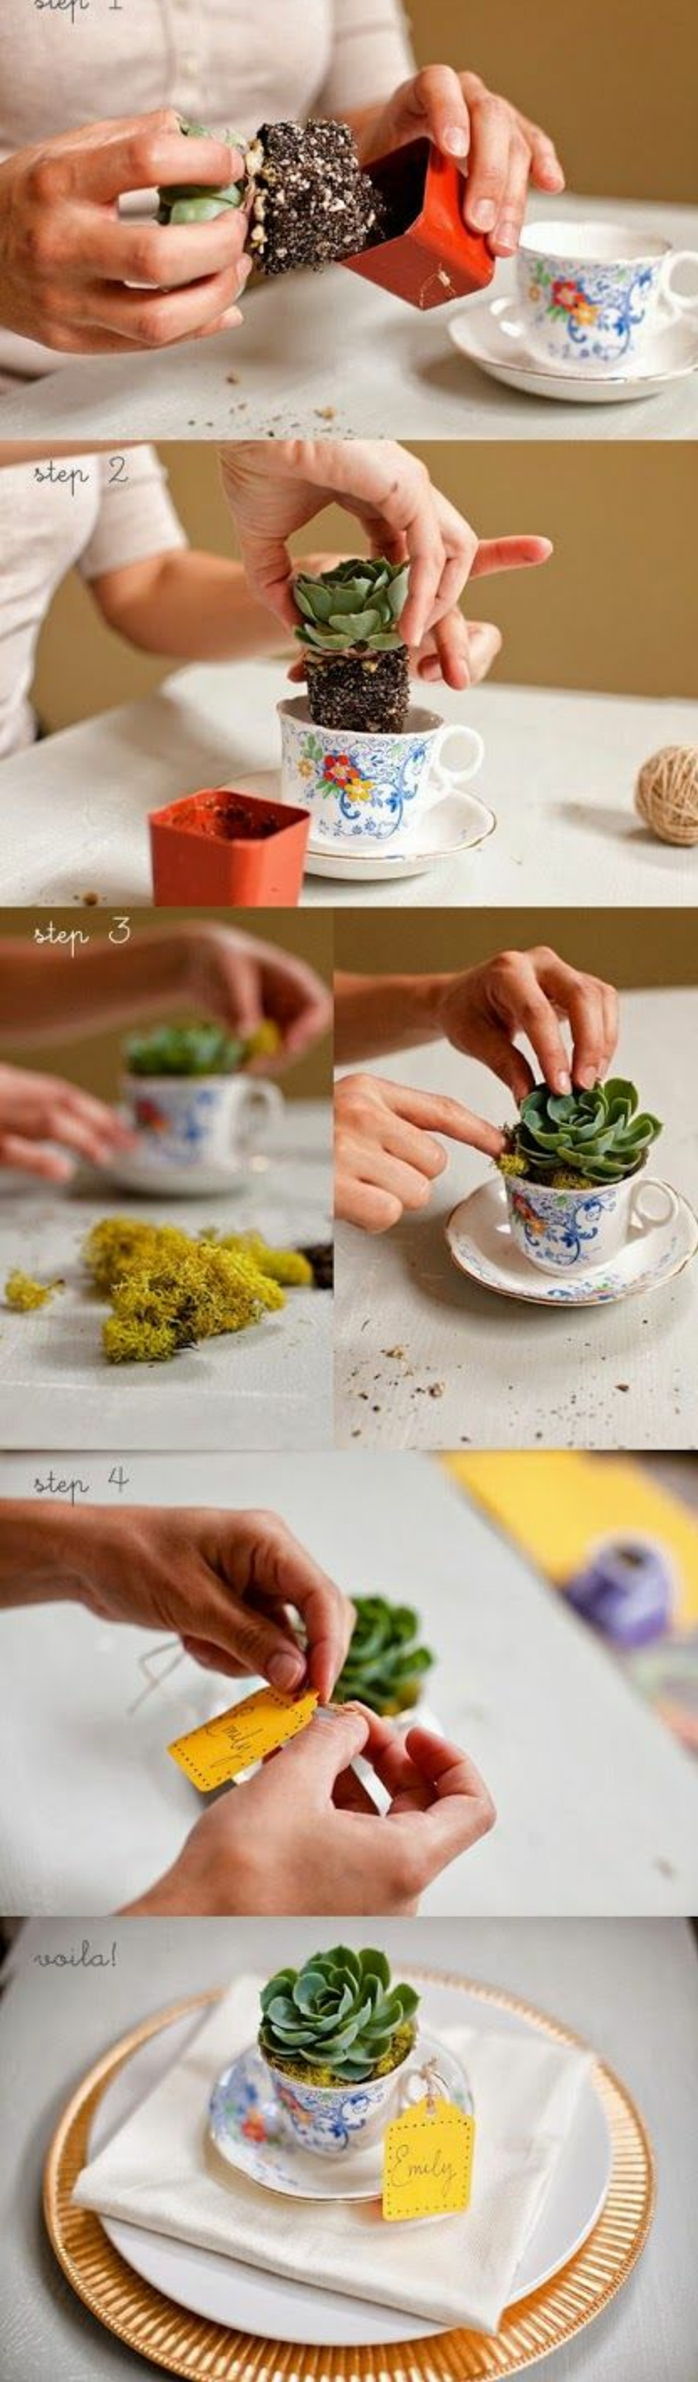 mažos gėlių vazonai, pagaminti iš spalvotų kavos puodelių, kaip stalo dekoravimas